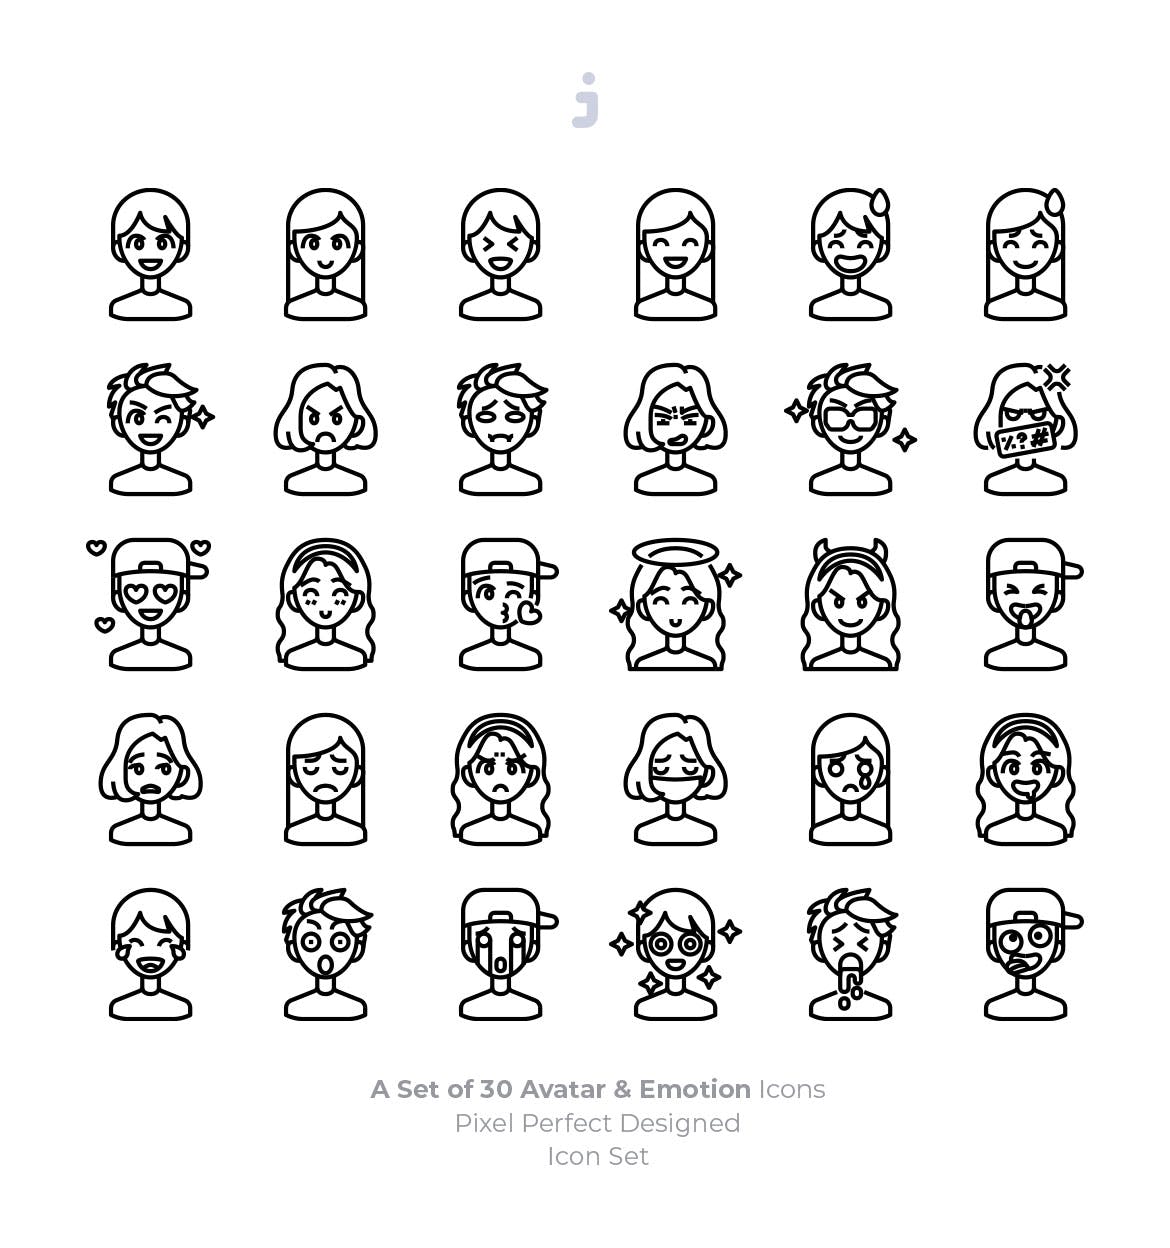 30枚彩色人物头像&表情矢量第一素材精选图标 30 Avatar and Emotion Icons插图(2)